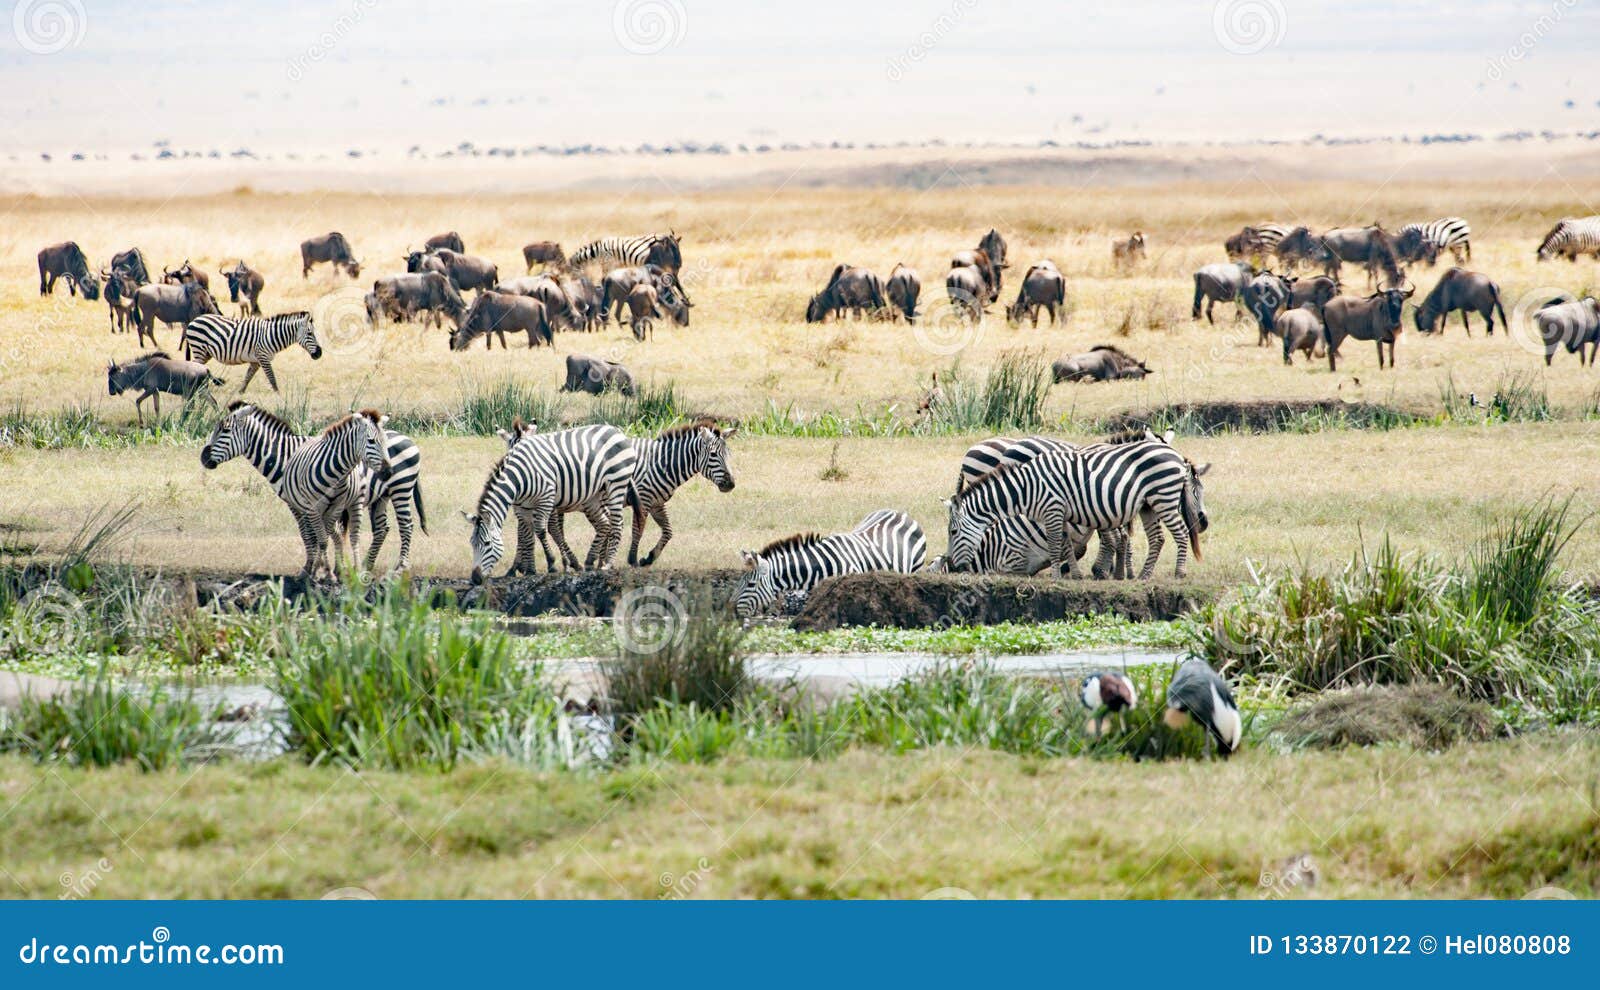 Het drinken Zebras, het weiden Gnus, Vogels in Ngorongoro-Krater. De Ngorongoro-Krater in Tanzania is een reusachtige behoudsaeria voor vele dieren Hippos in de vijver, Zebras, wildebeests en de vogels op de savanne